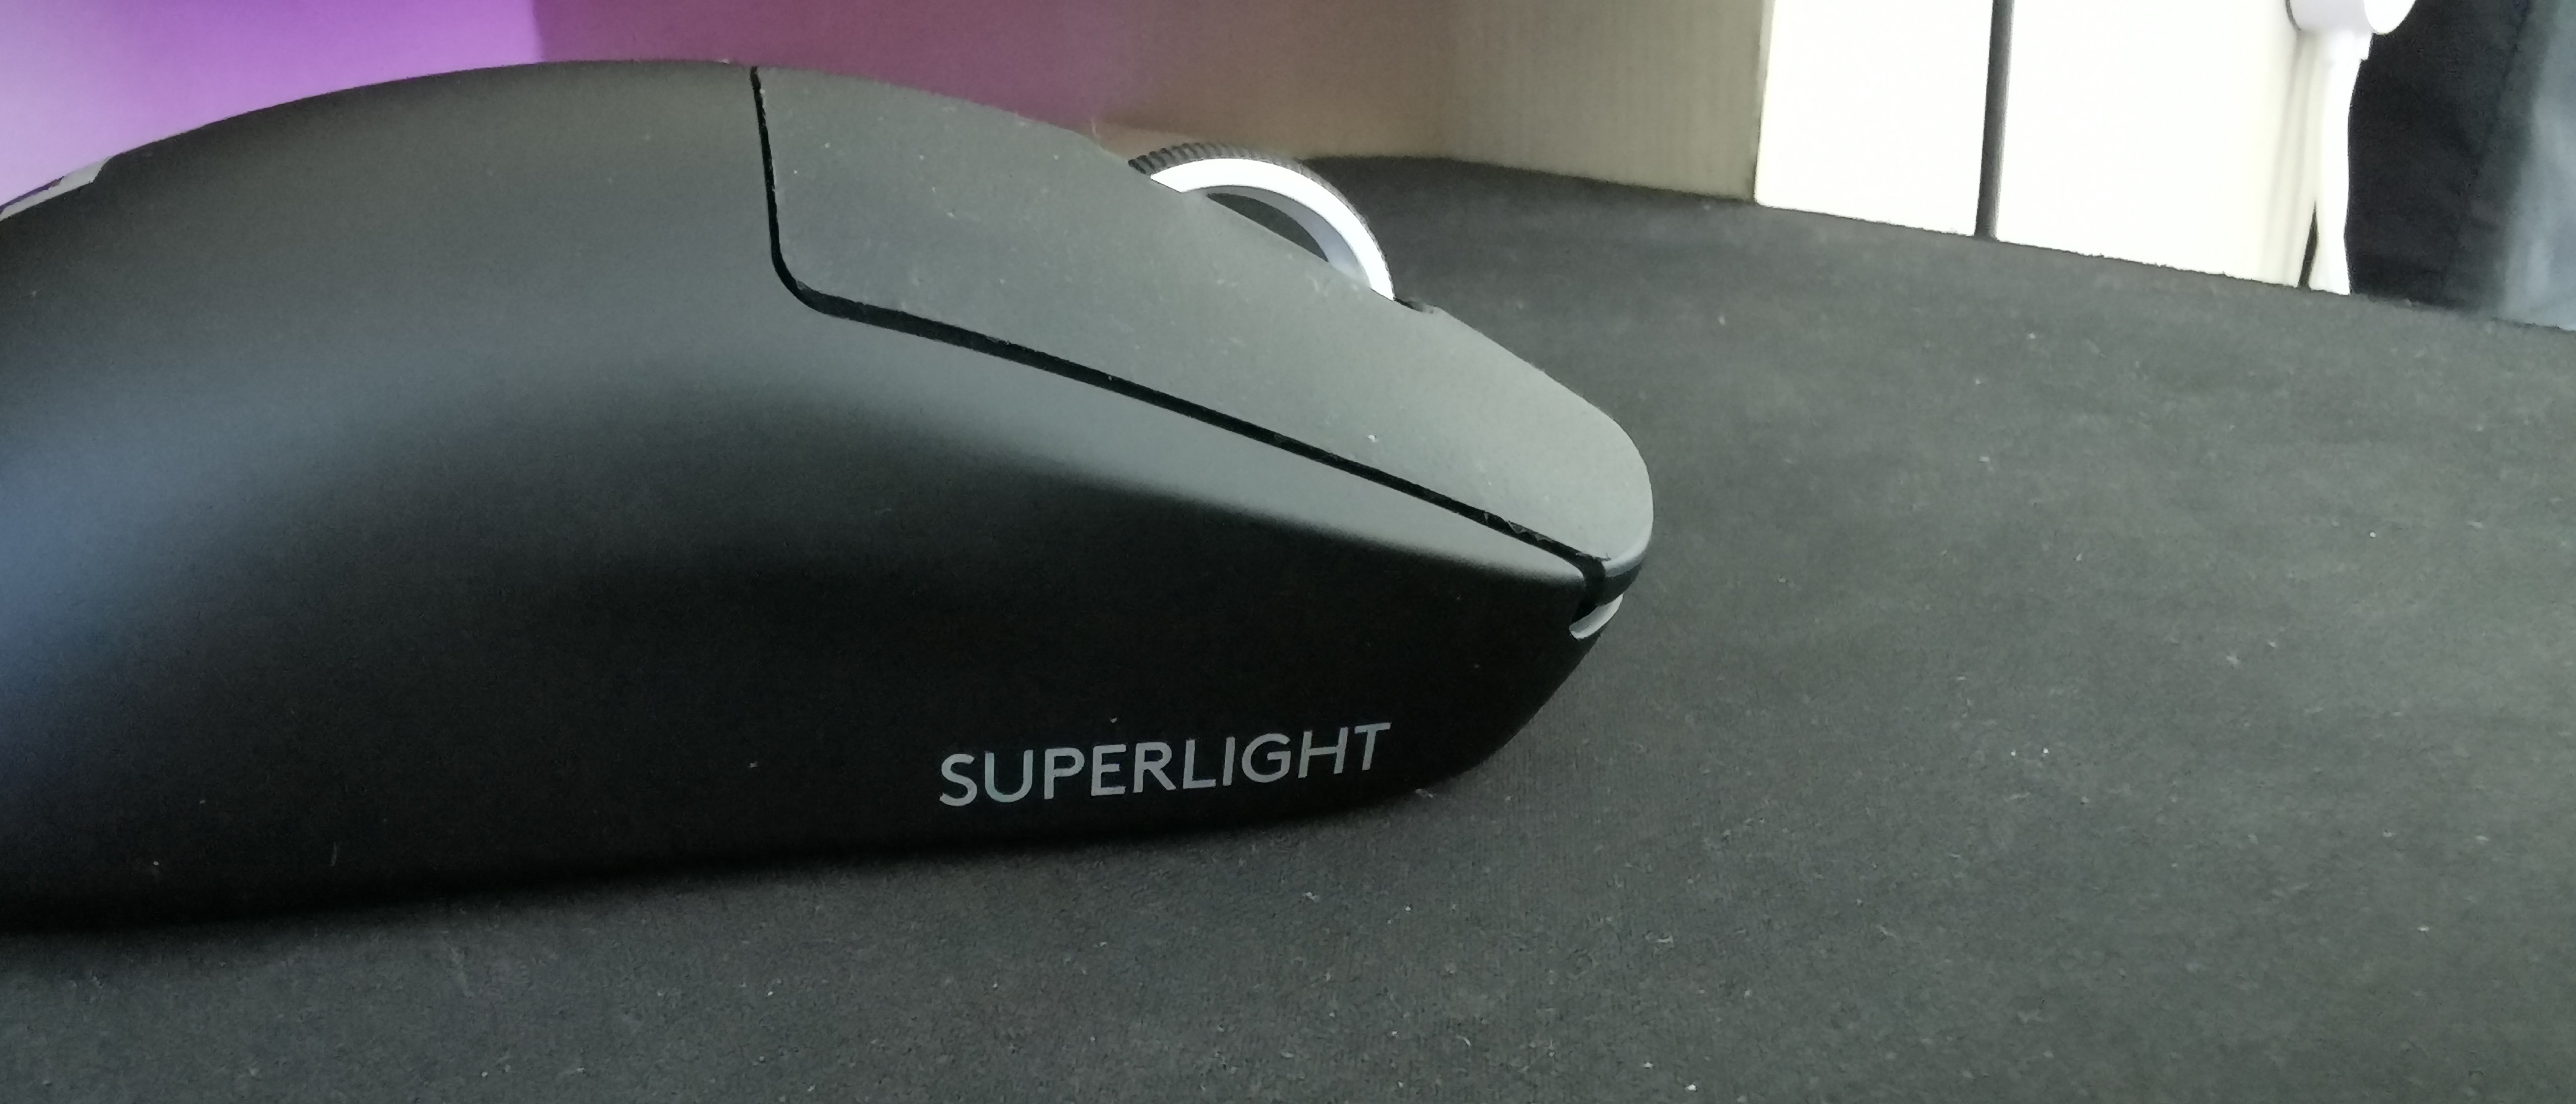 logitech superlight software